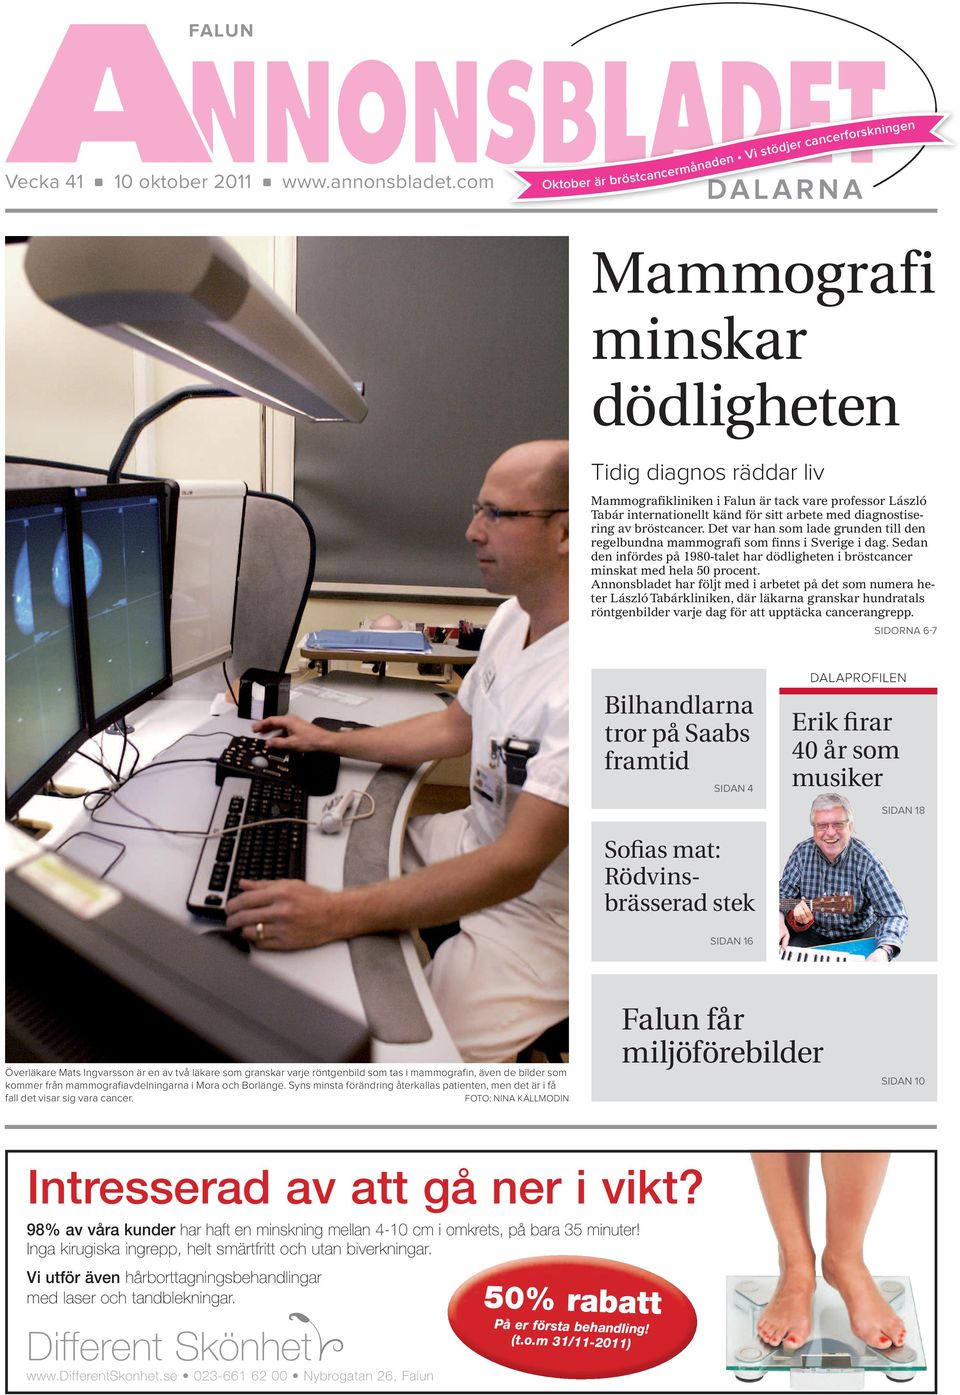 känd för sitt arbete med diagnostisering av bröstcancer. Det var han som lade grunden till den regelbundna mammografi som finns i Sverige i dag.